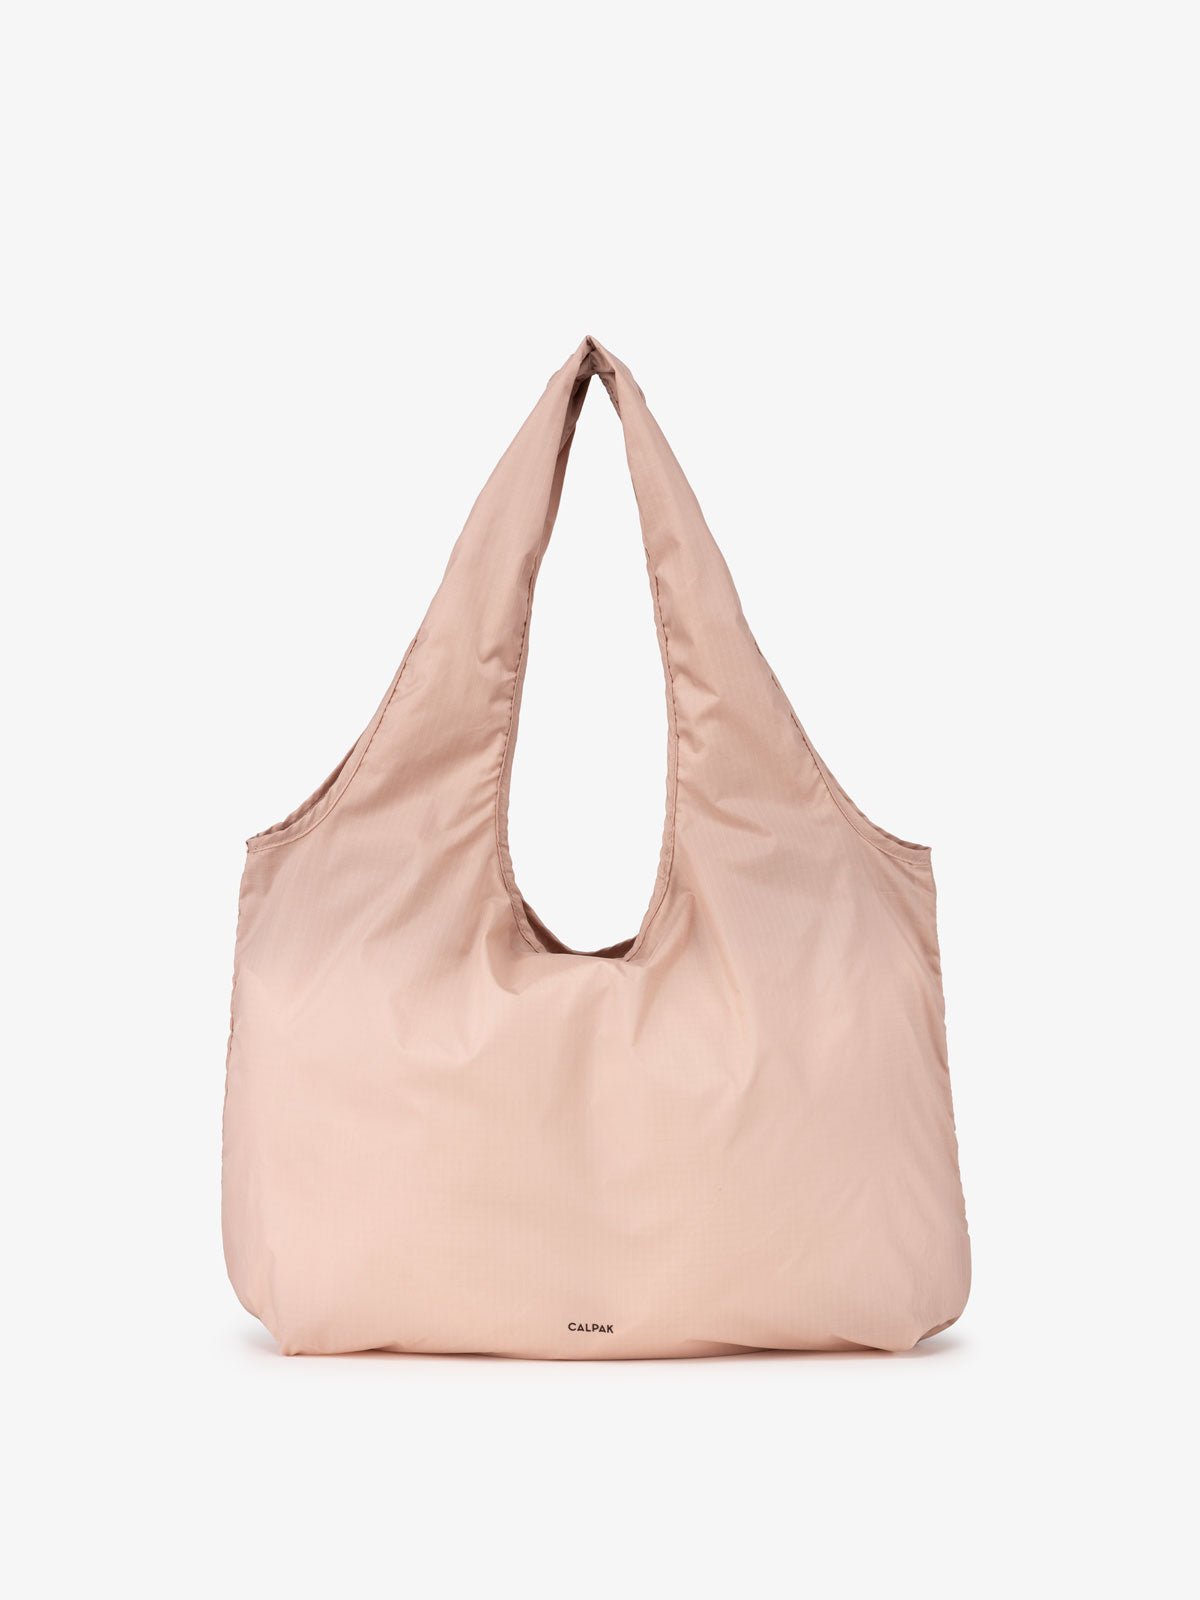 CALPAK Packable Tote Bag in pink